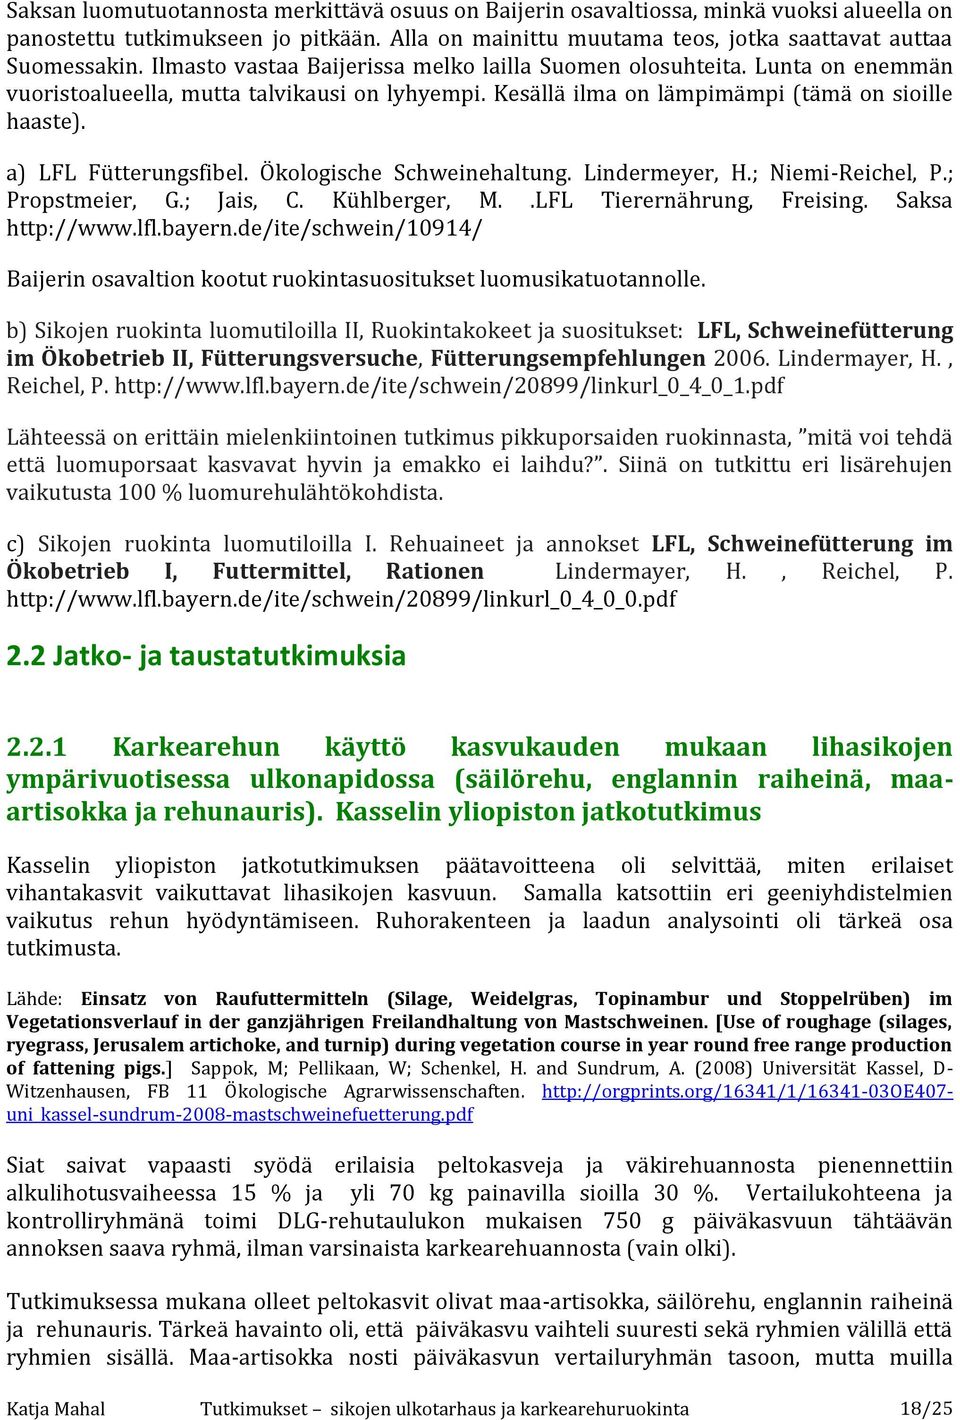 Ökologische Schweinehaltung. Lindermeyer, H.; Niemi-Reichel, P.; Propstmeier, G.; Jais, C. Kühlberger, M..LFL Tierernährung, Freising. Saksa http://www.lfl.bayern.